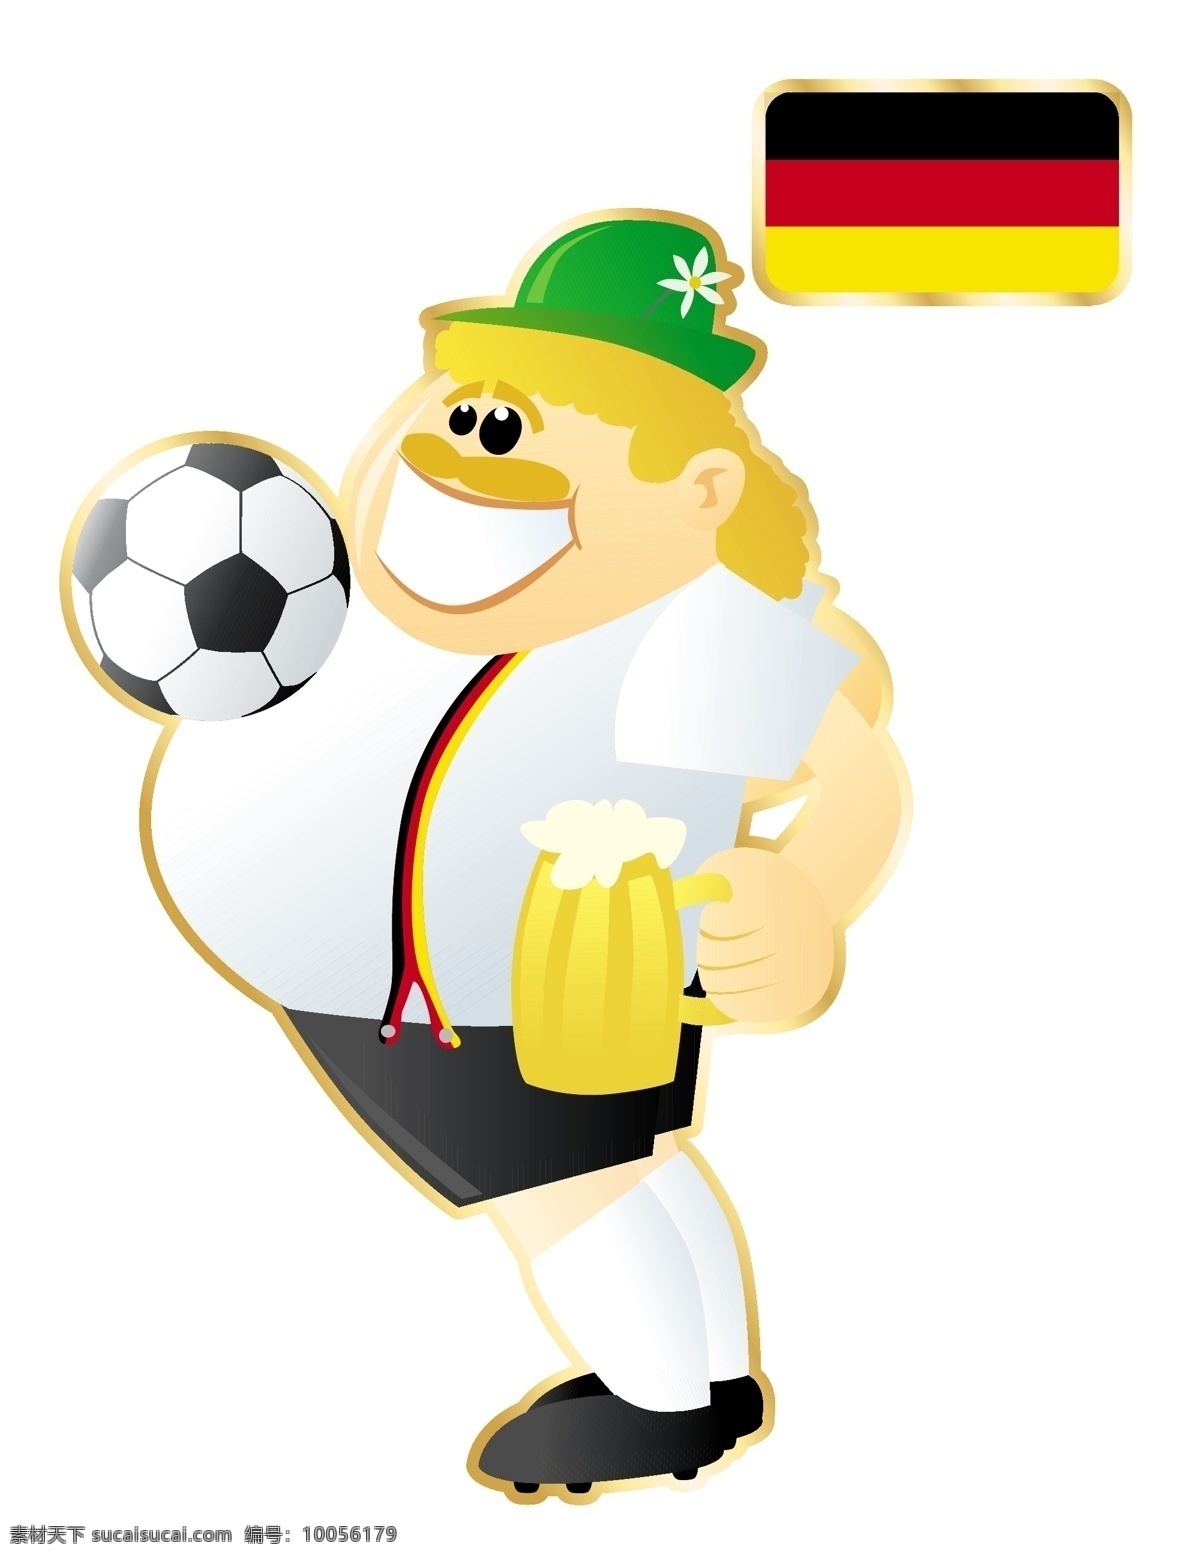 国家 足球 卡通 人物 形象 矢量图 大肚子 运动员 大胖子 运动 踢球 外国 矢量 扁平化 平面